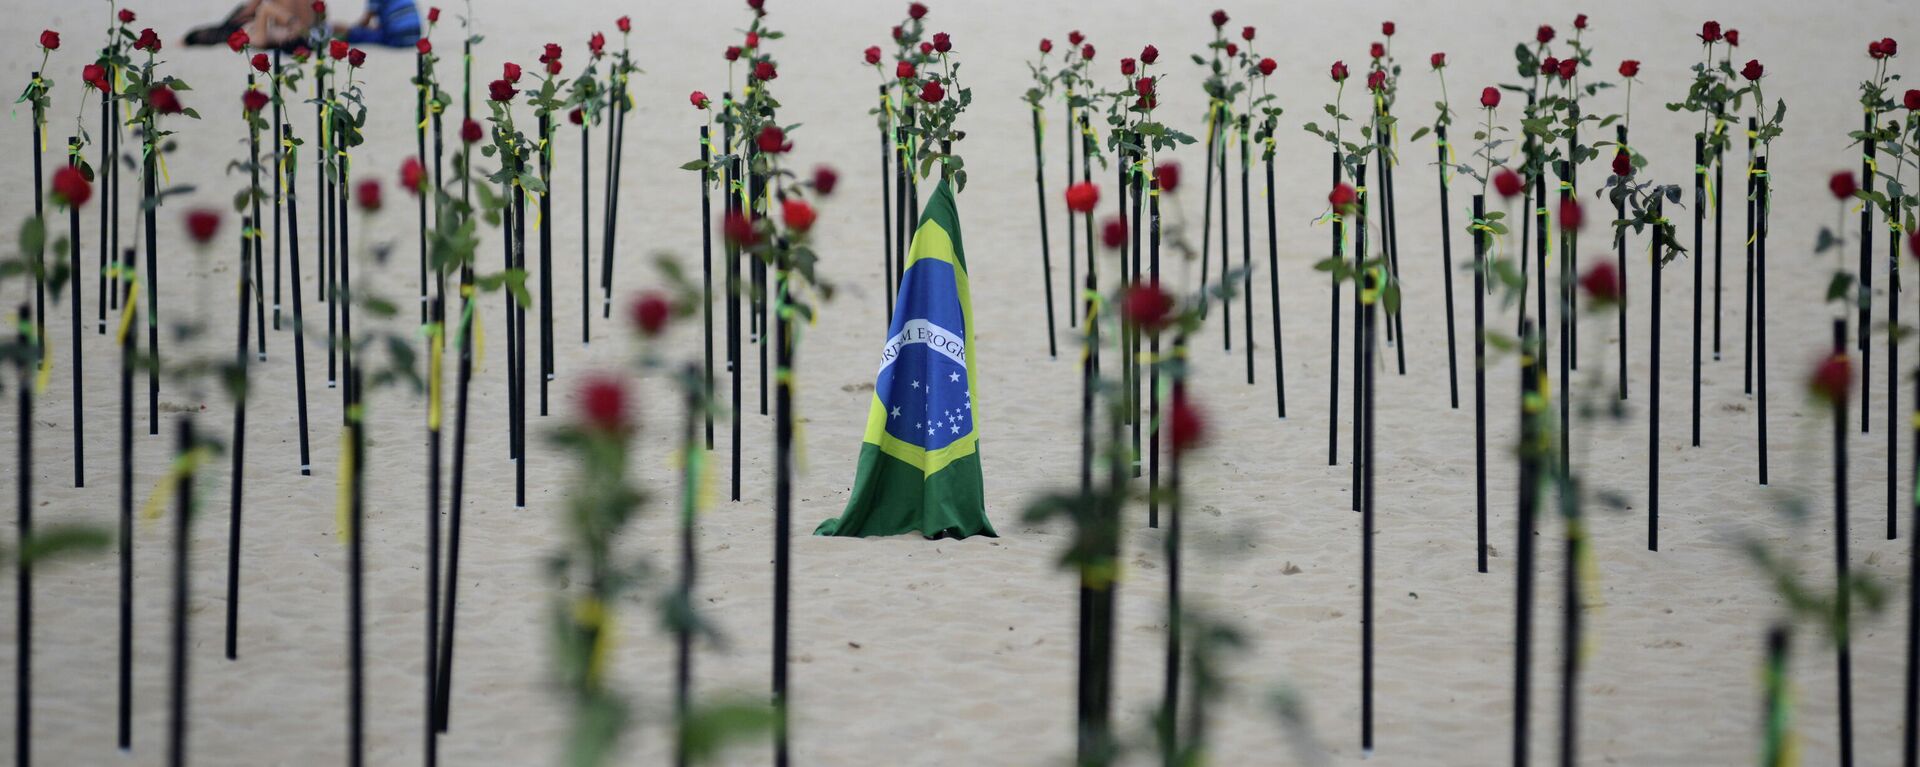 La playa de Copacabana recuerda al medio millón de muertos por el coronavirus en Brasil - Sputnik Mundo, 1920, 20.06.2021